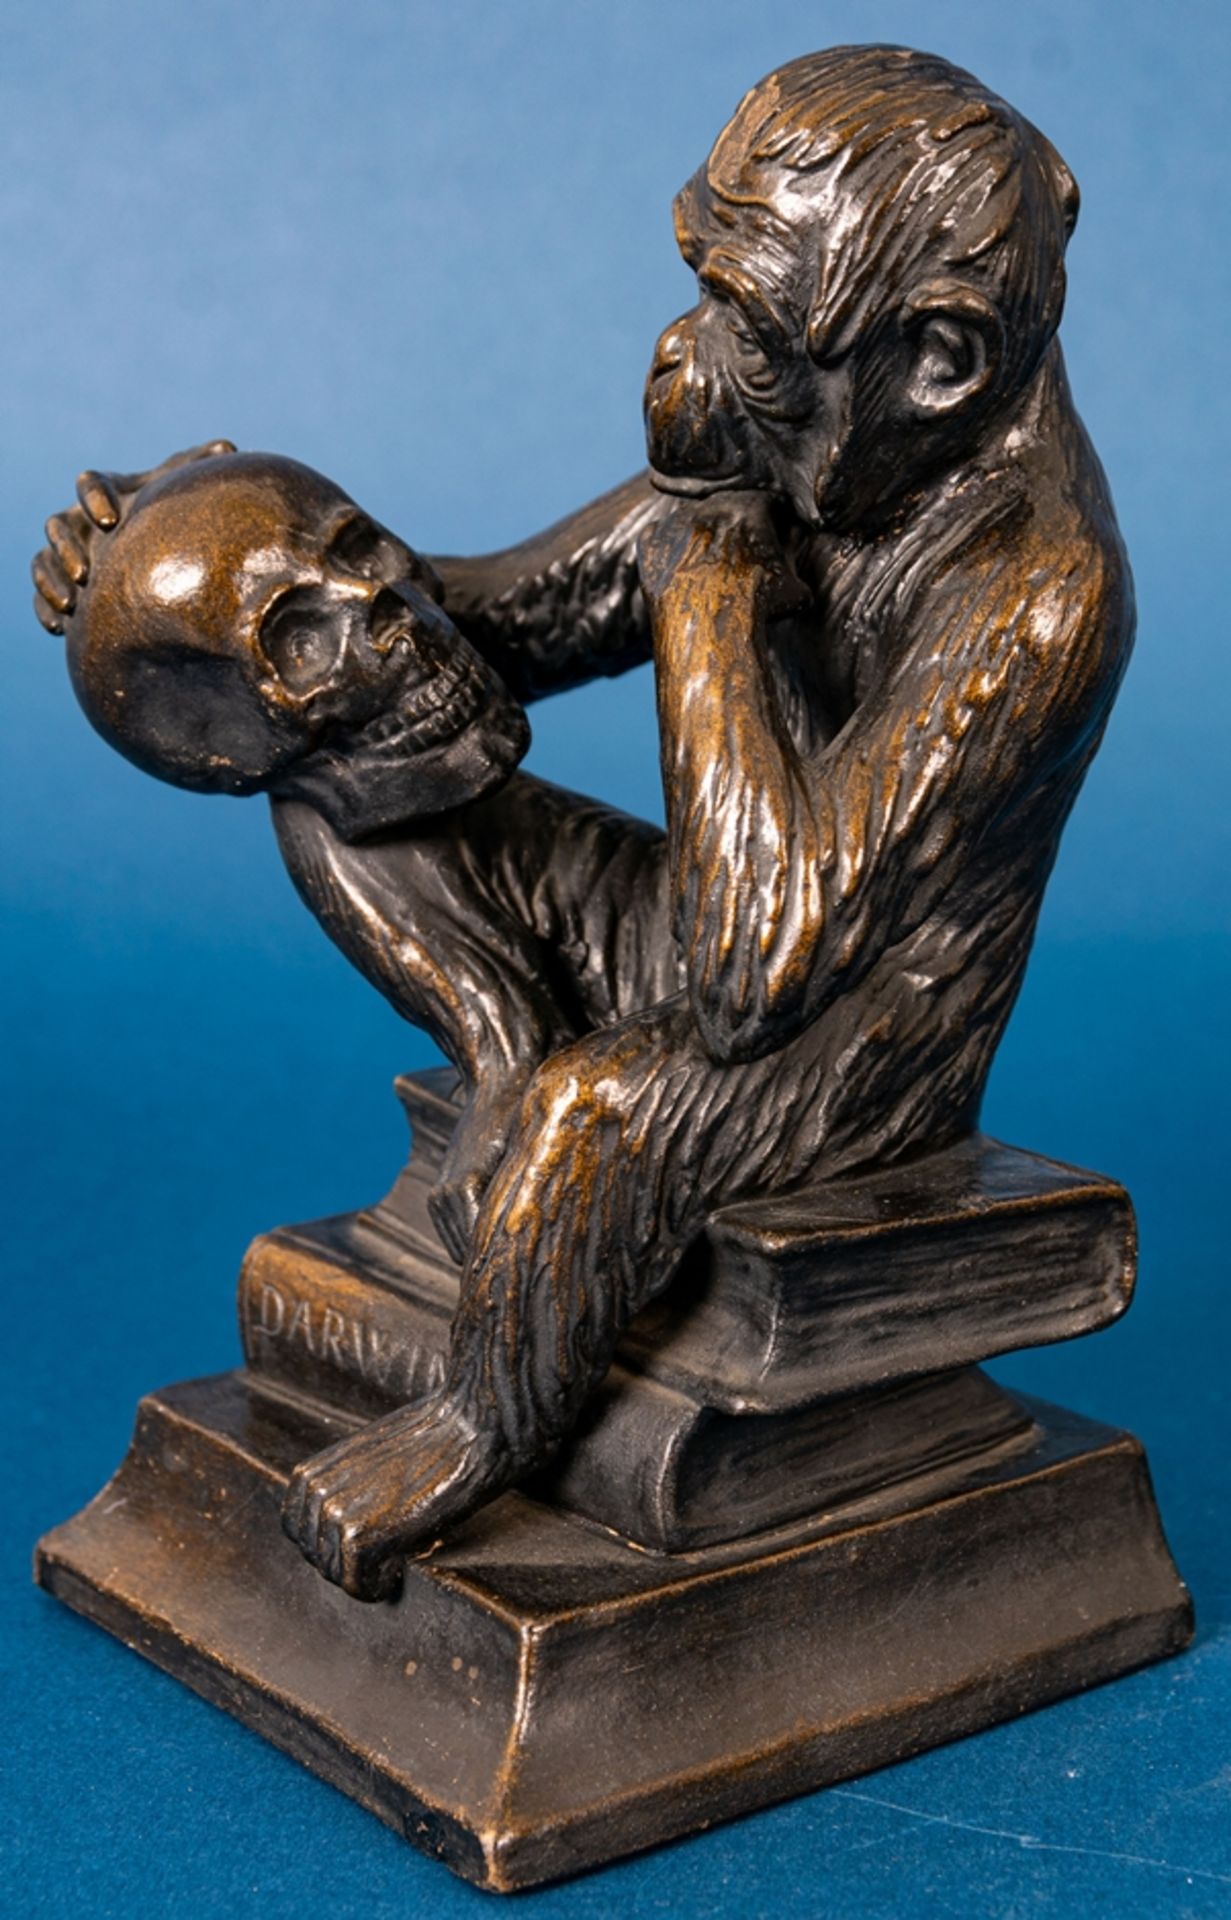 "DARWIN" - sitzender Affe, sich einen menschlichen Schädel nachdenklich betrach